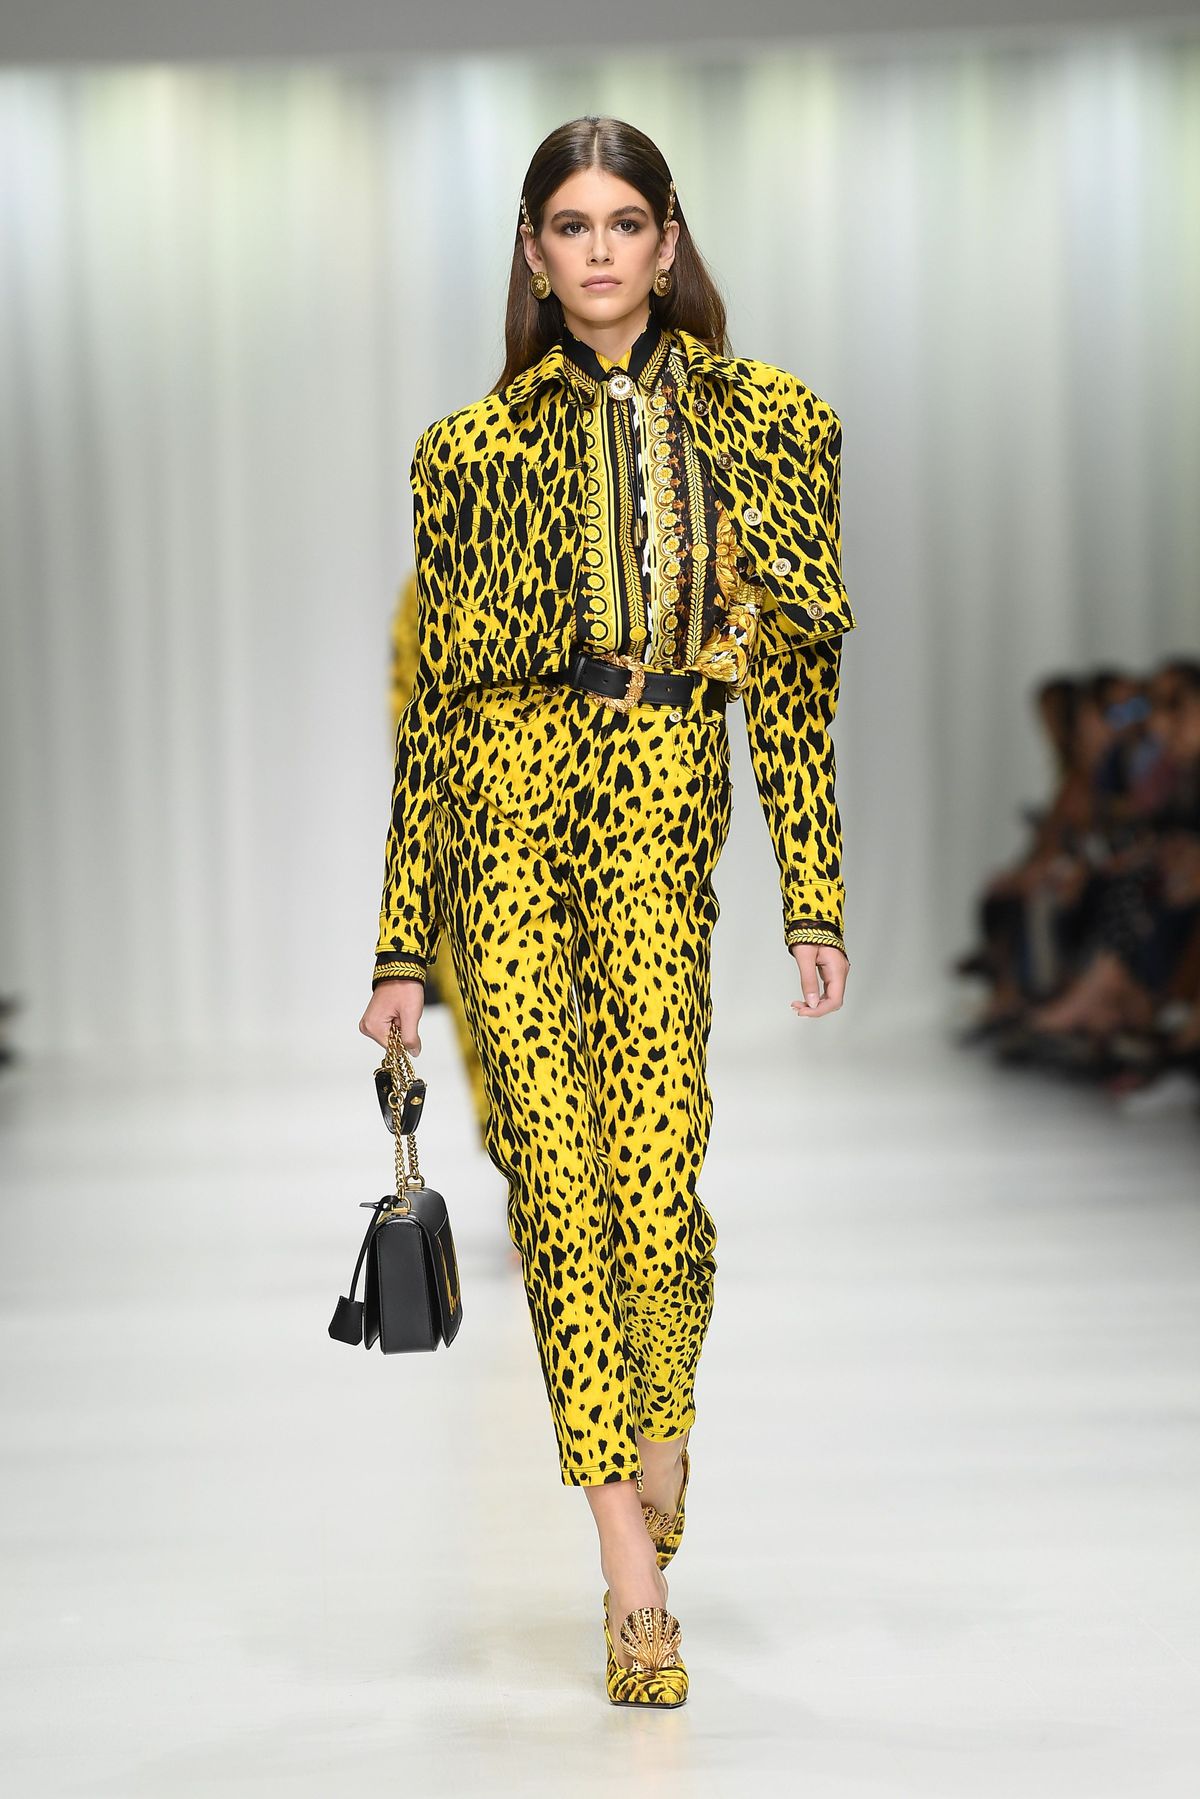 Kaia Gerber Versace ss18 milan fashion week